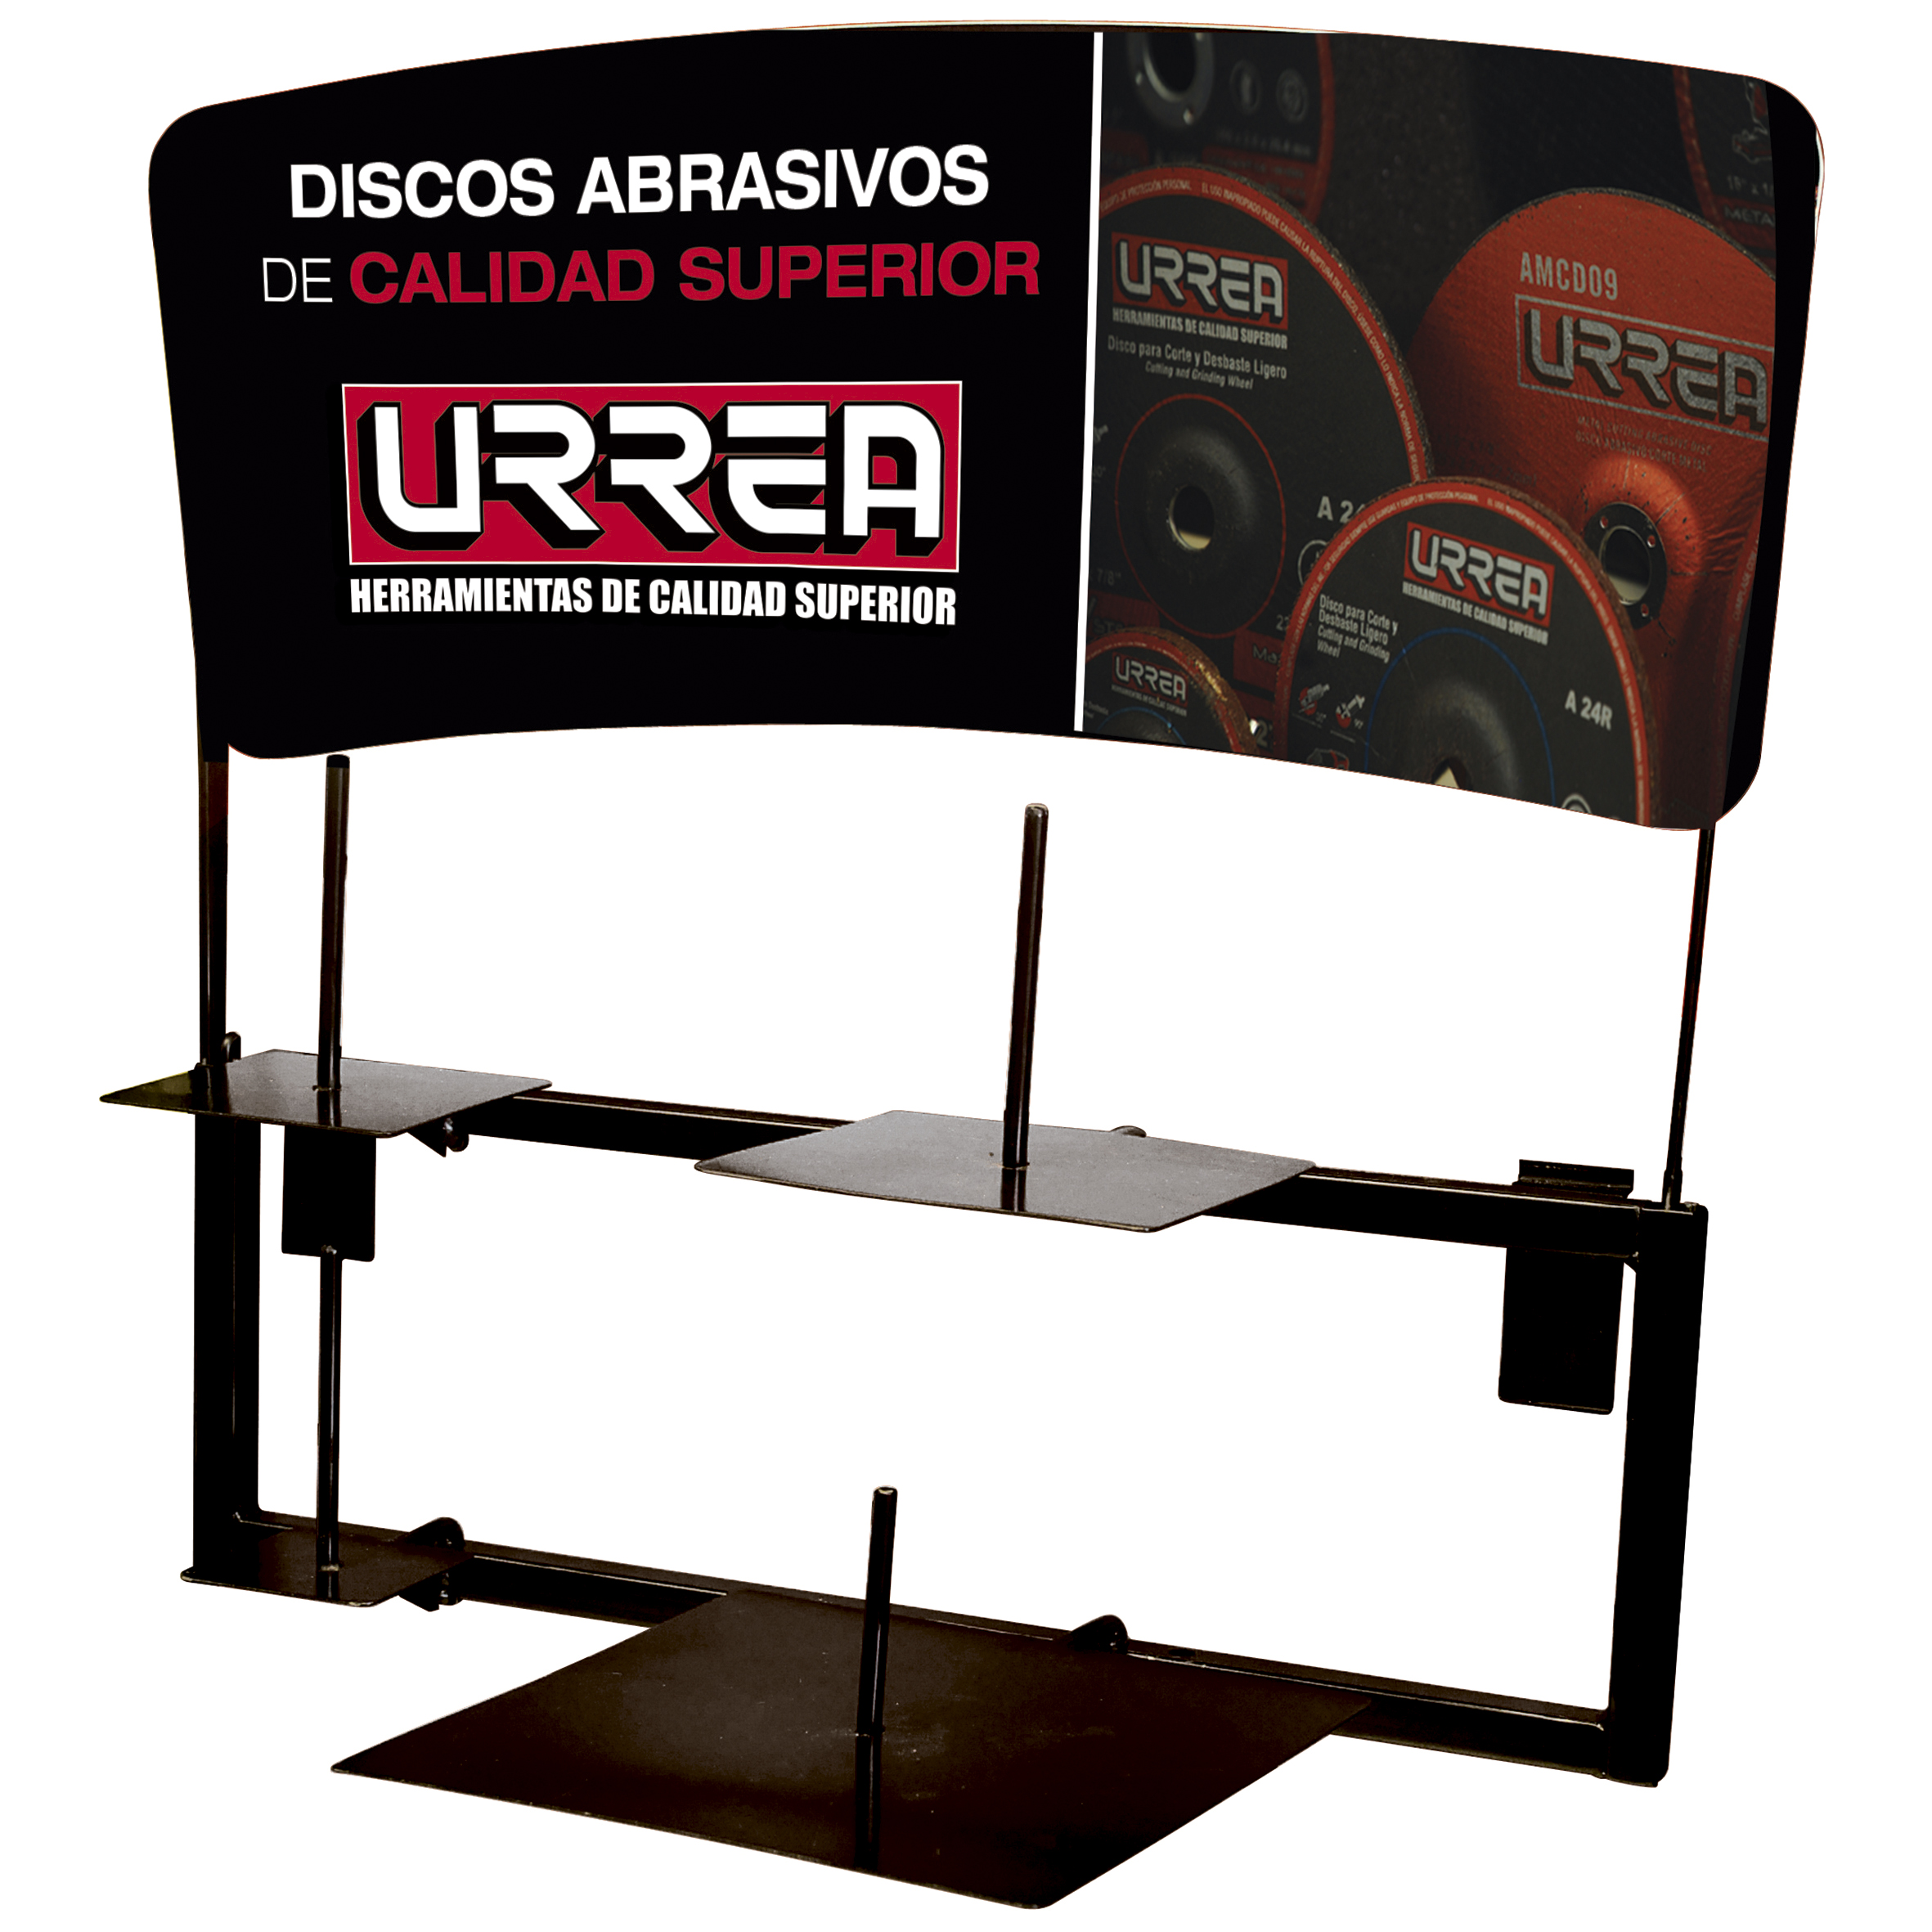 Imagen para Rack vertical para discos abrasivos sin carga de Grupo Urrea